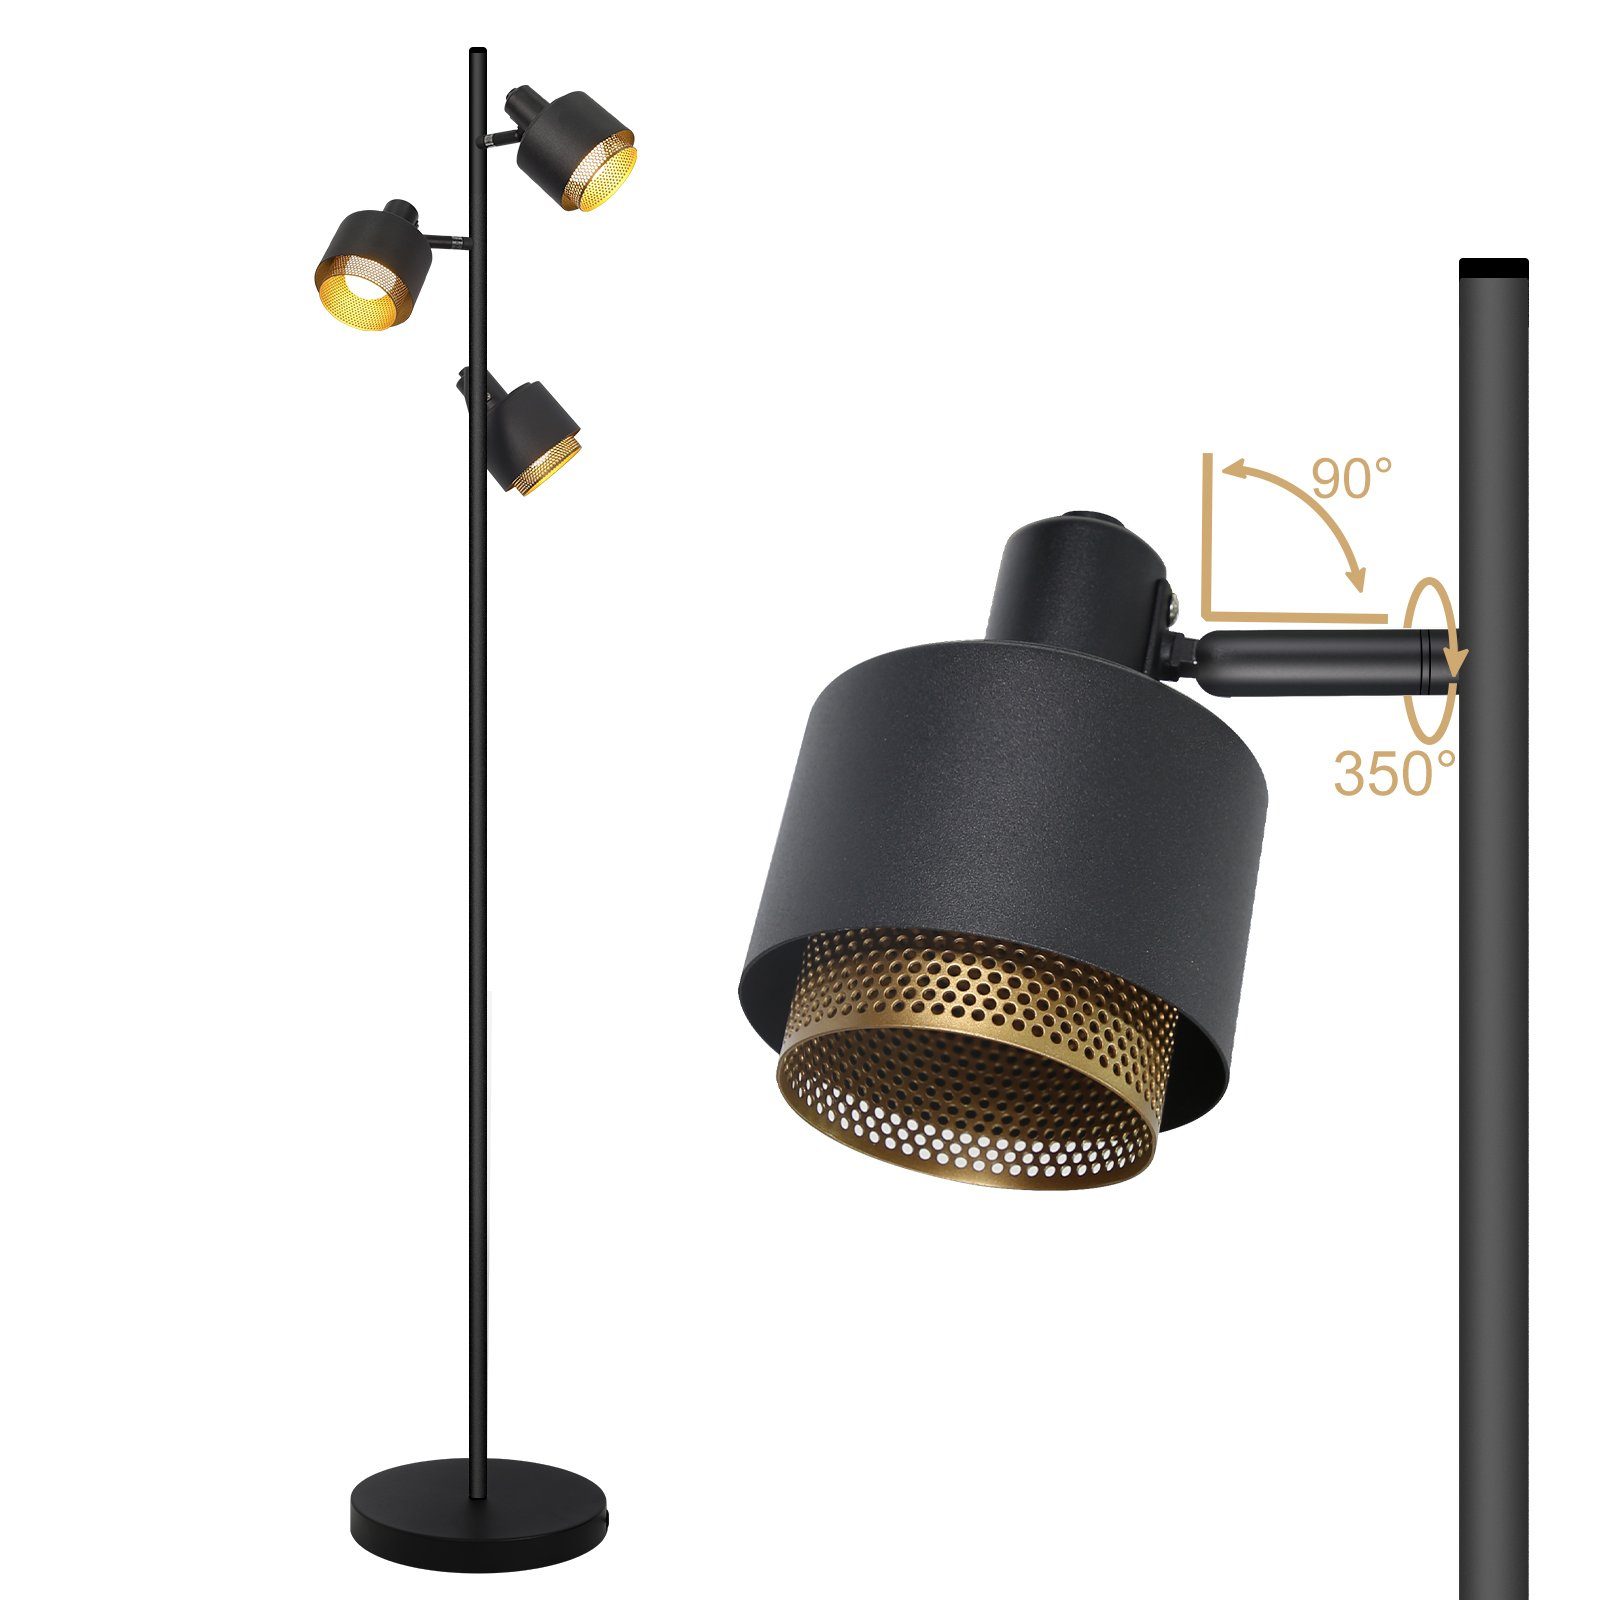 Drehbar LED Industrial retro, wechselbar ZMH Schwenkbar Design Stehlampe Vintage Strahler